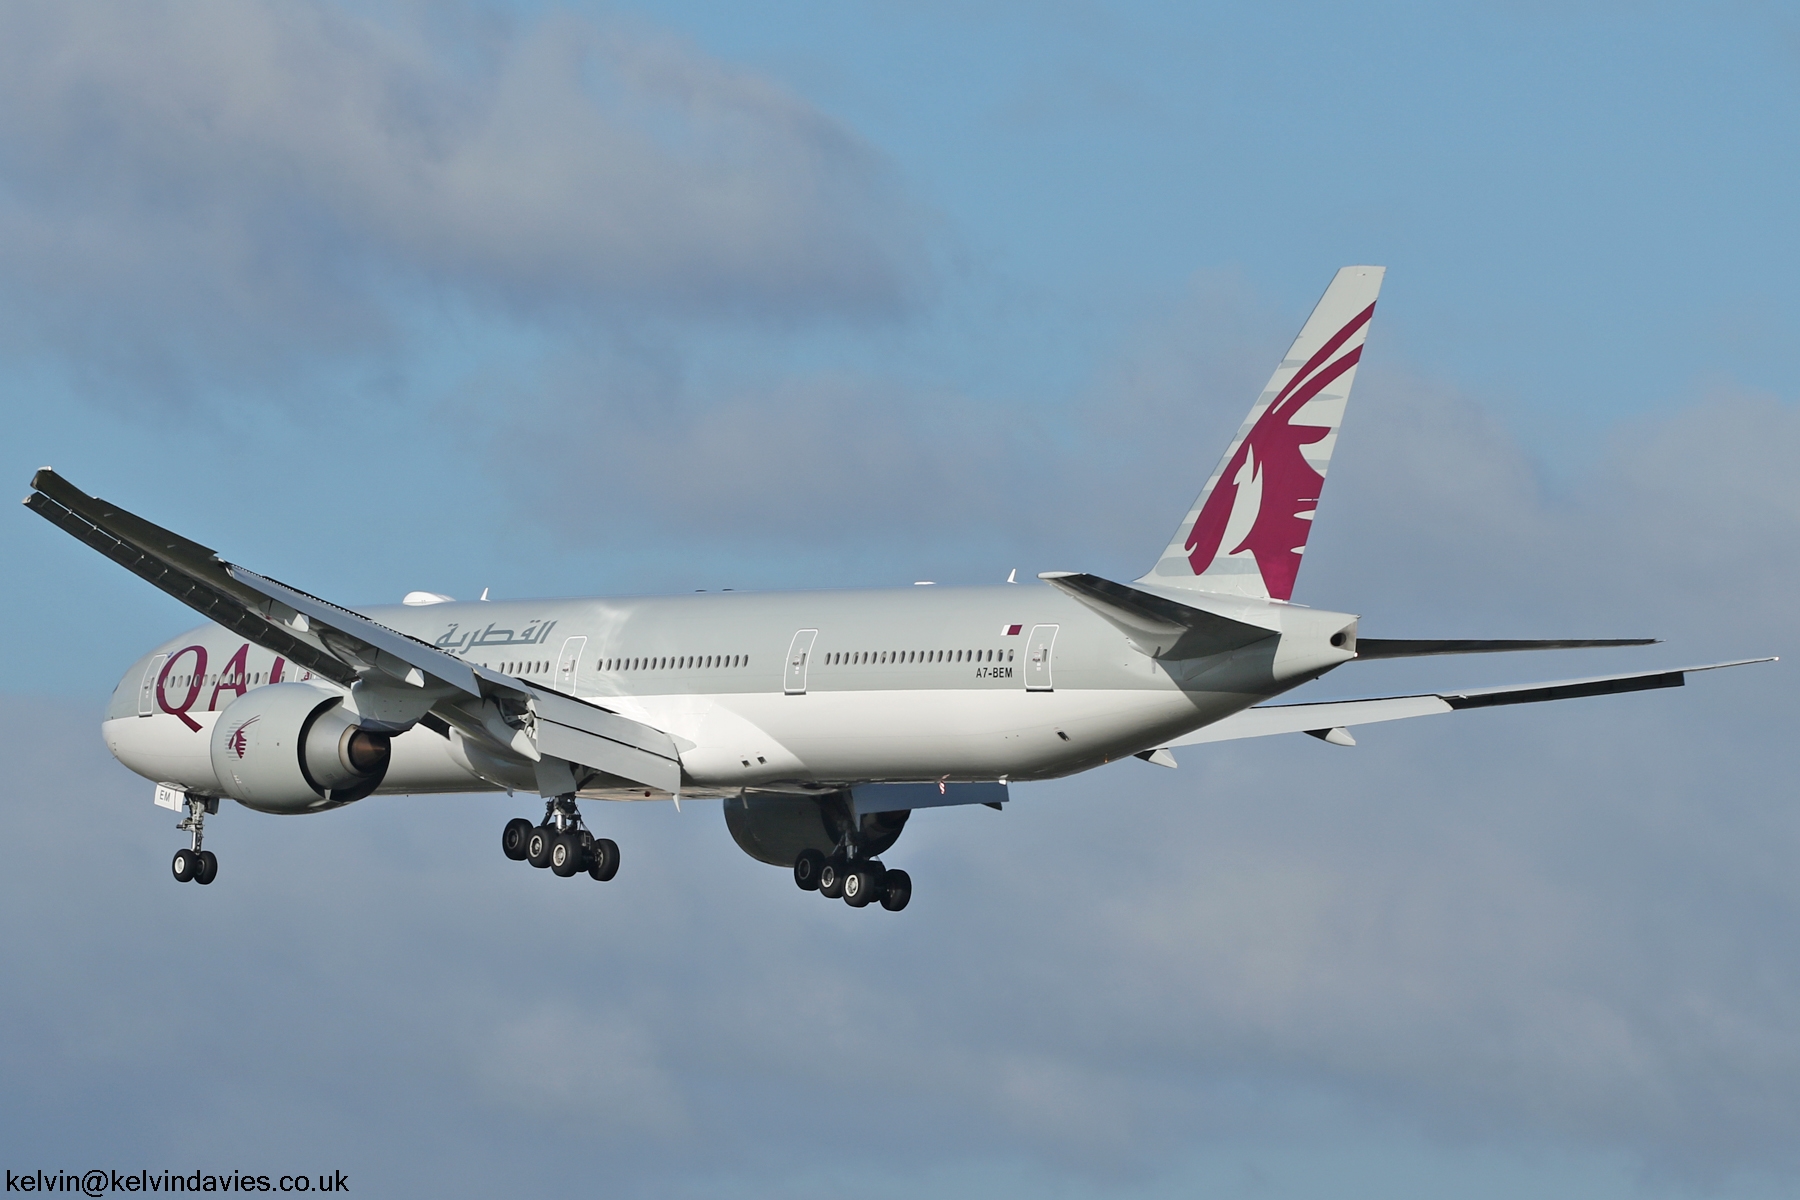 Qatar Airways 777 A7-BEM